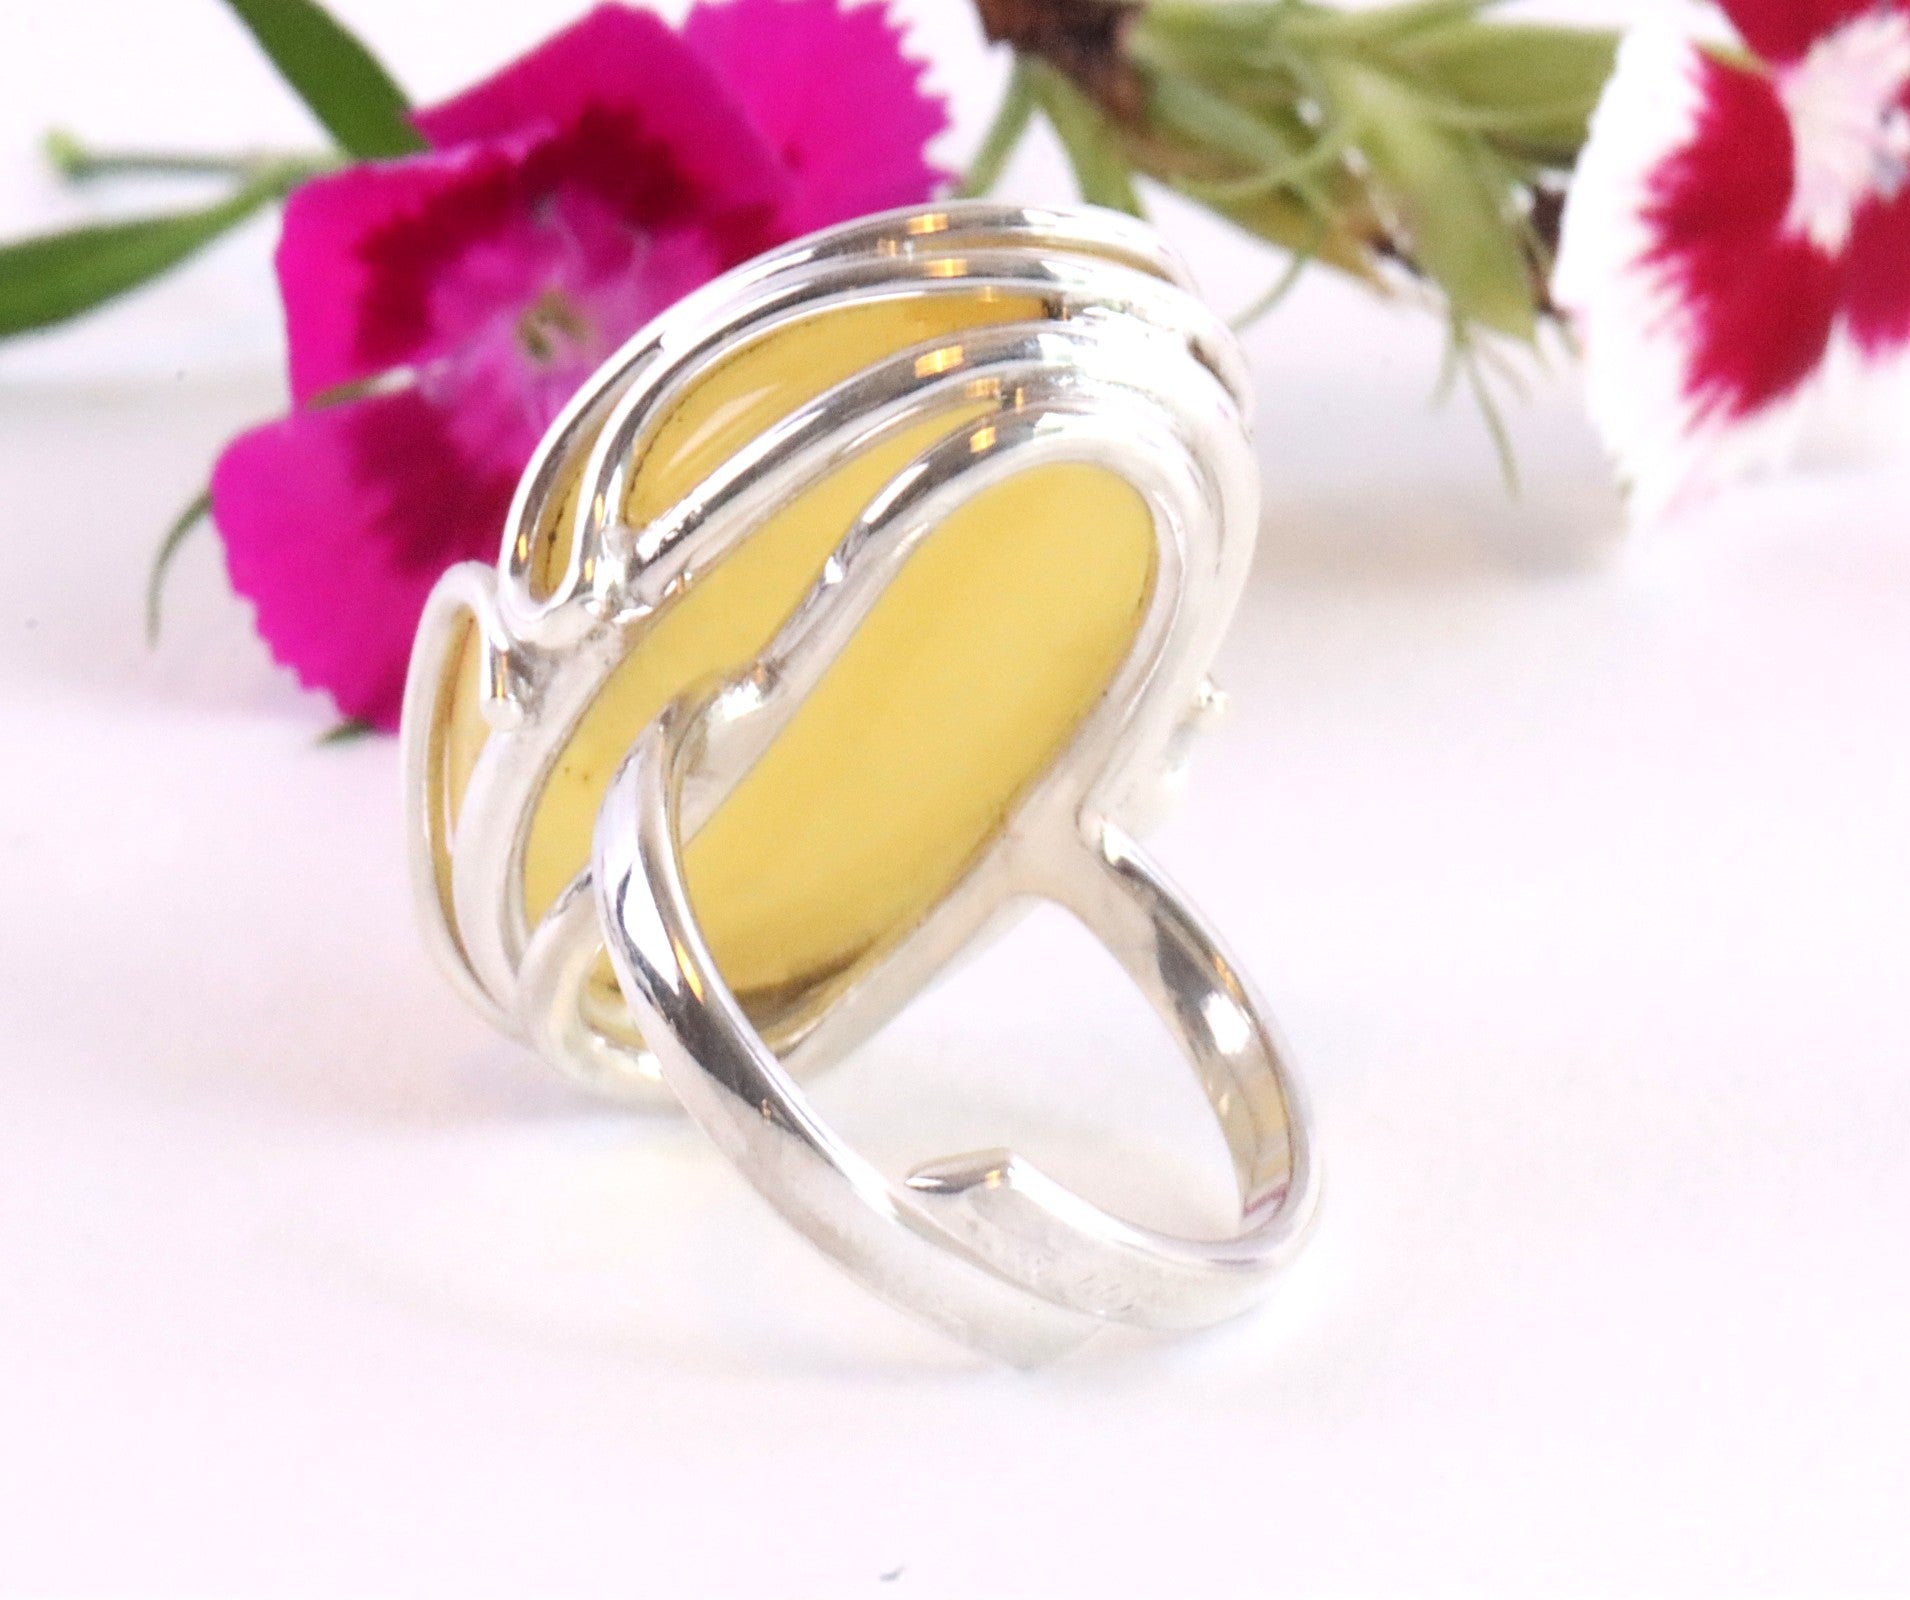 White Baltic Amber Ring